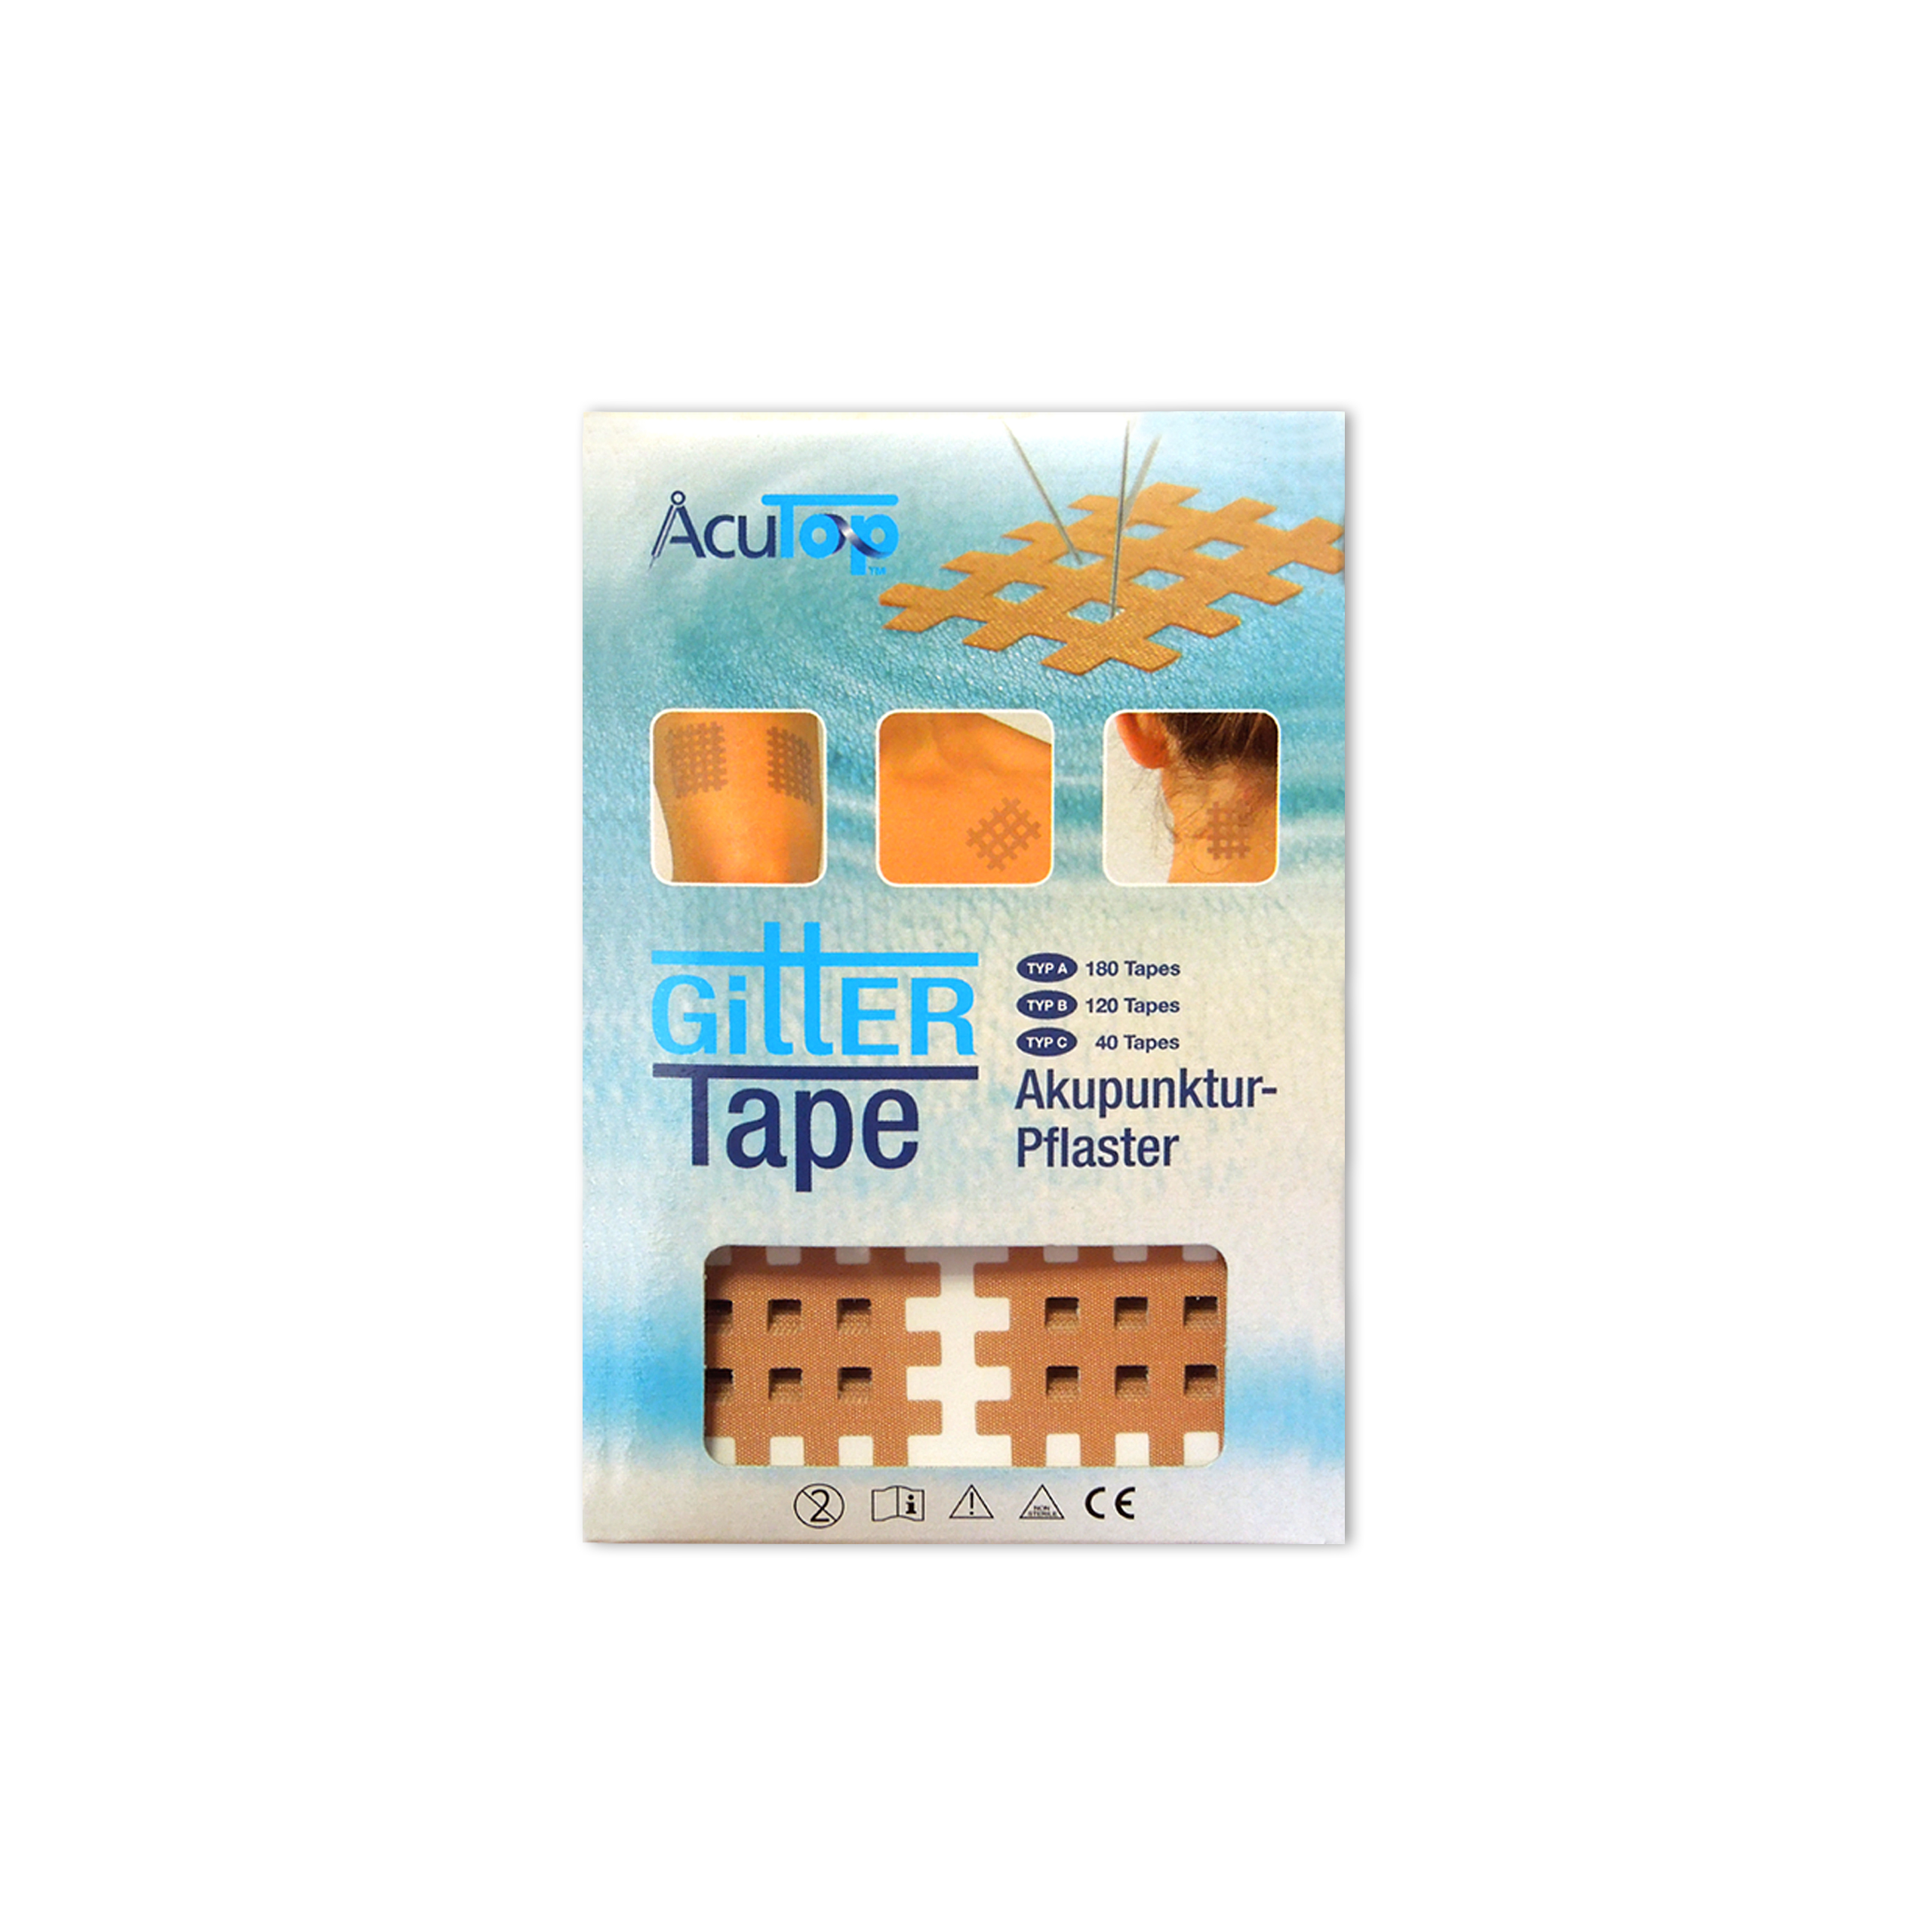 AcuTop® Gitter Tape - Typ B